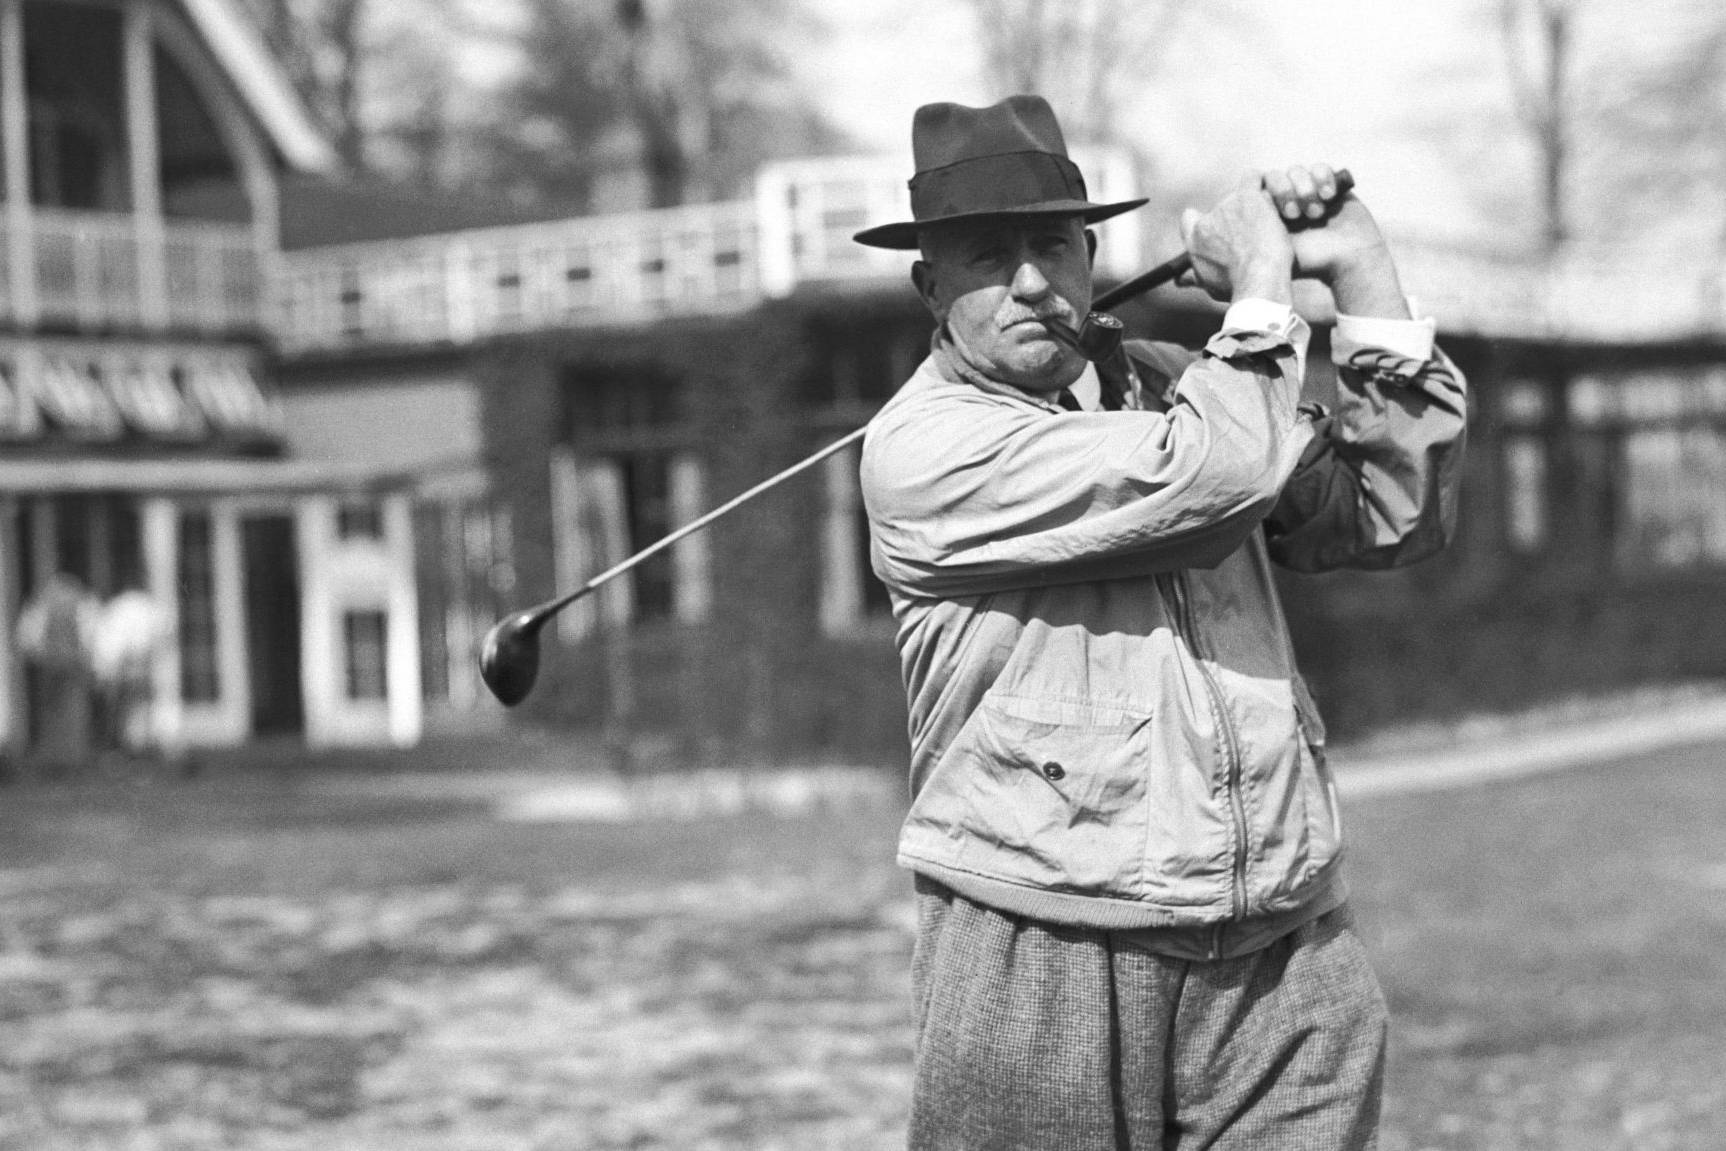 man mid swing with a golf club